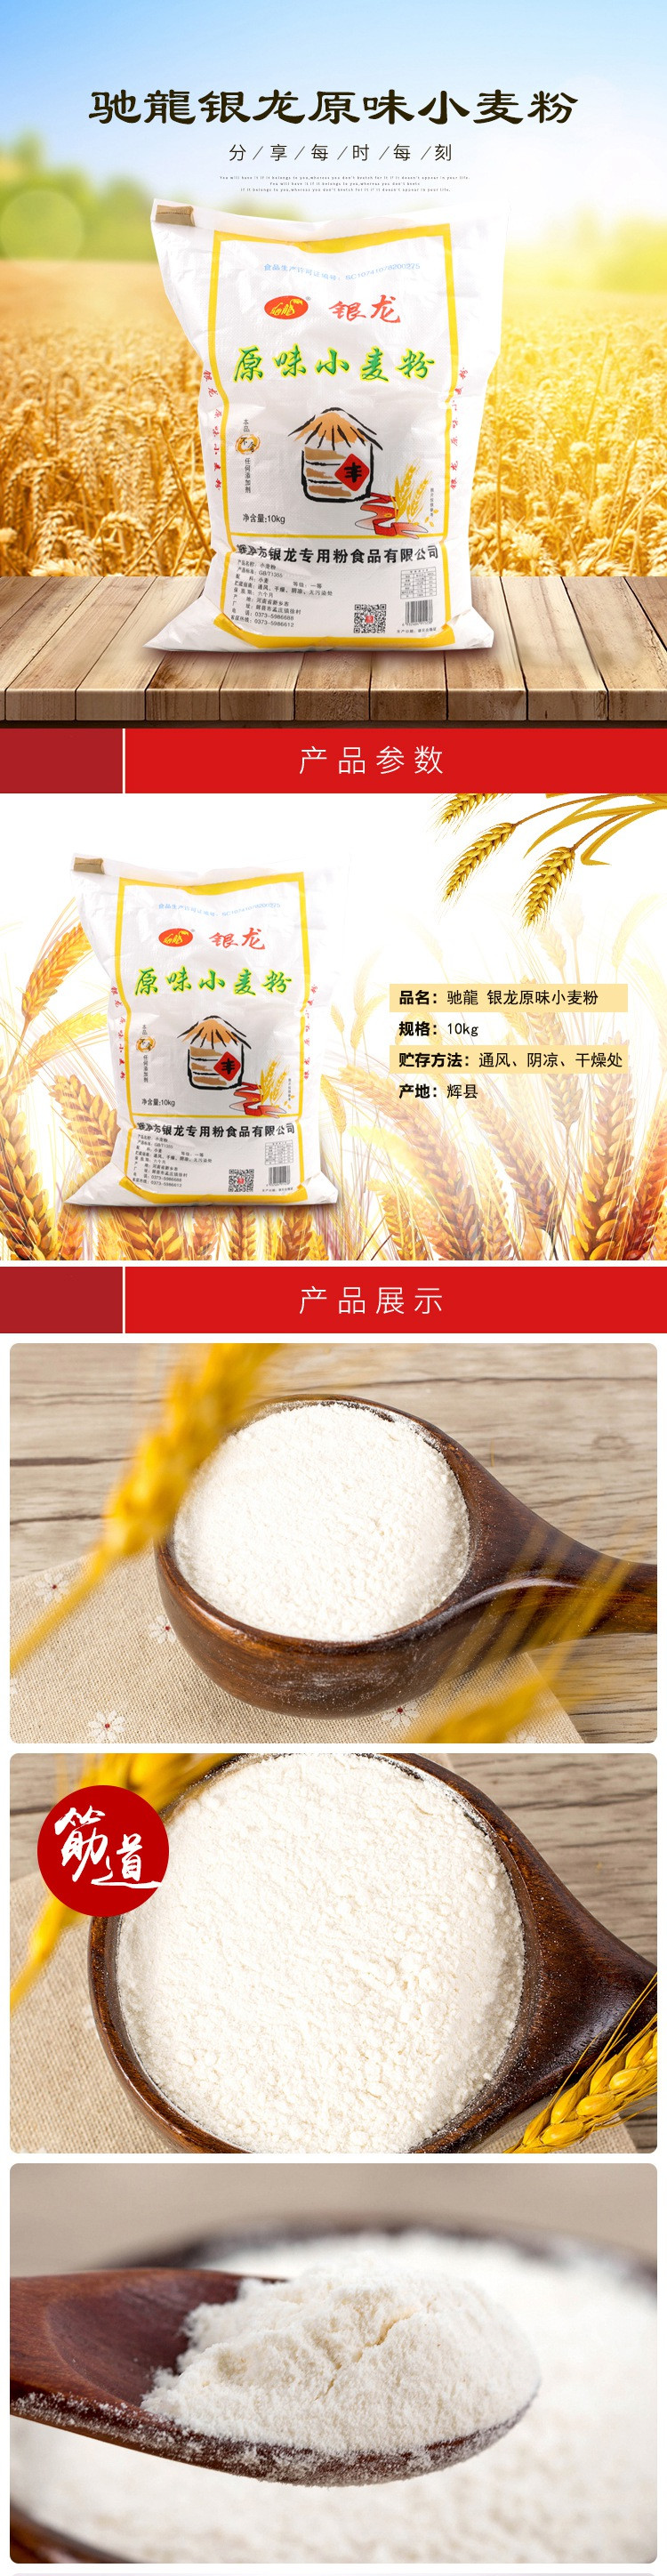 【消费扶贫】孟庄镇特产 驰龍 银龙原味小麦粉10kg 不含任何添加剂